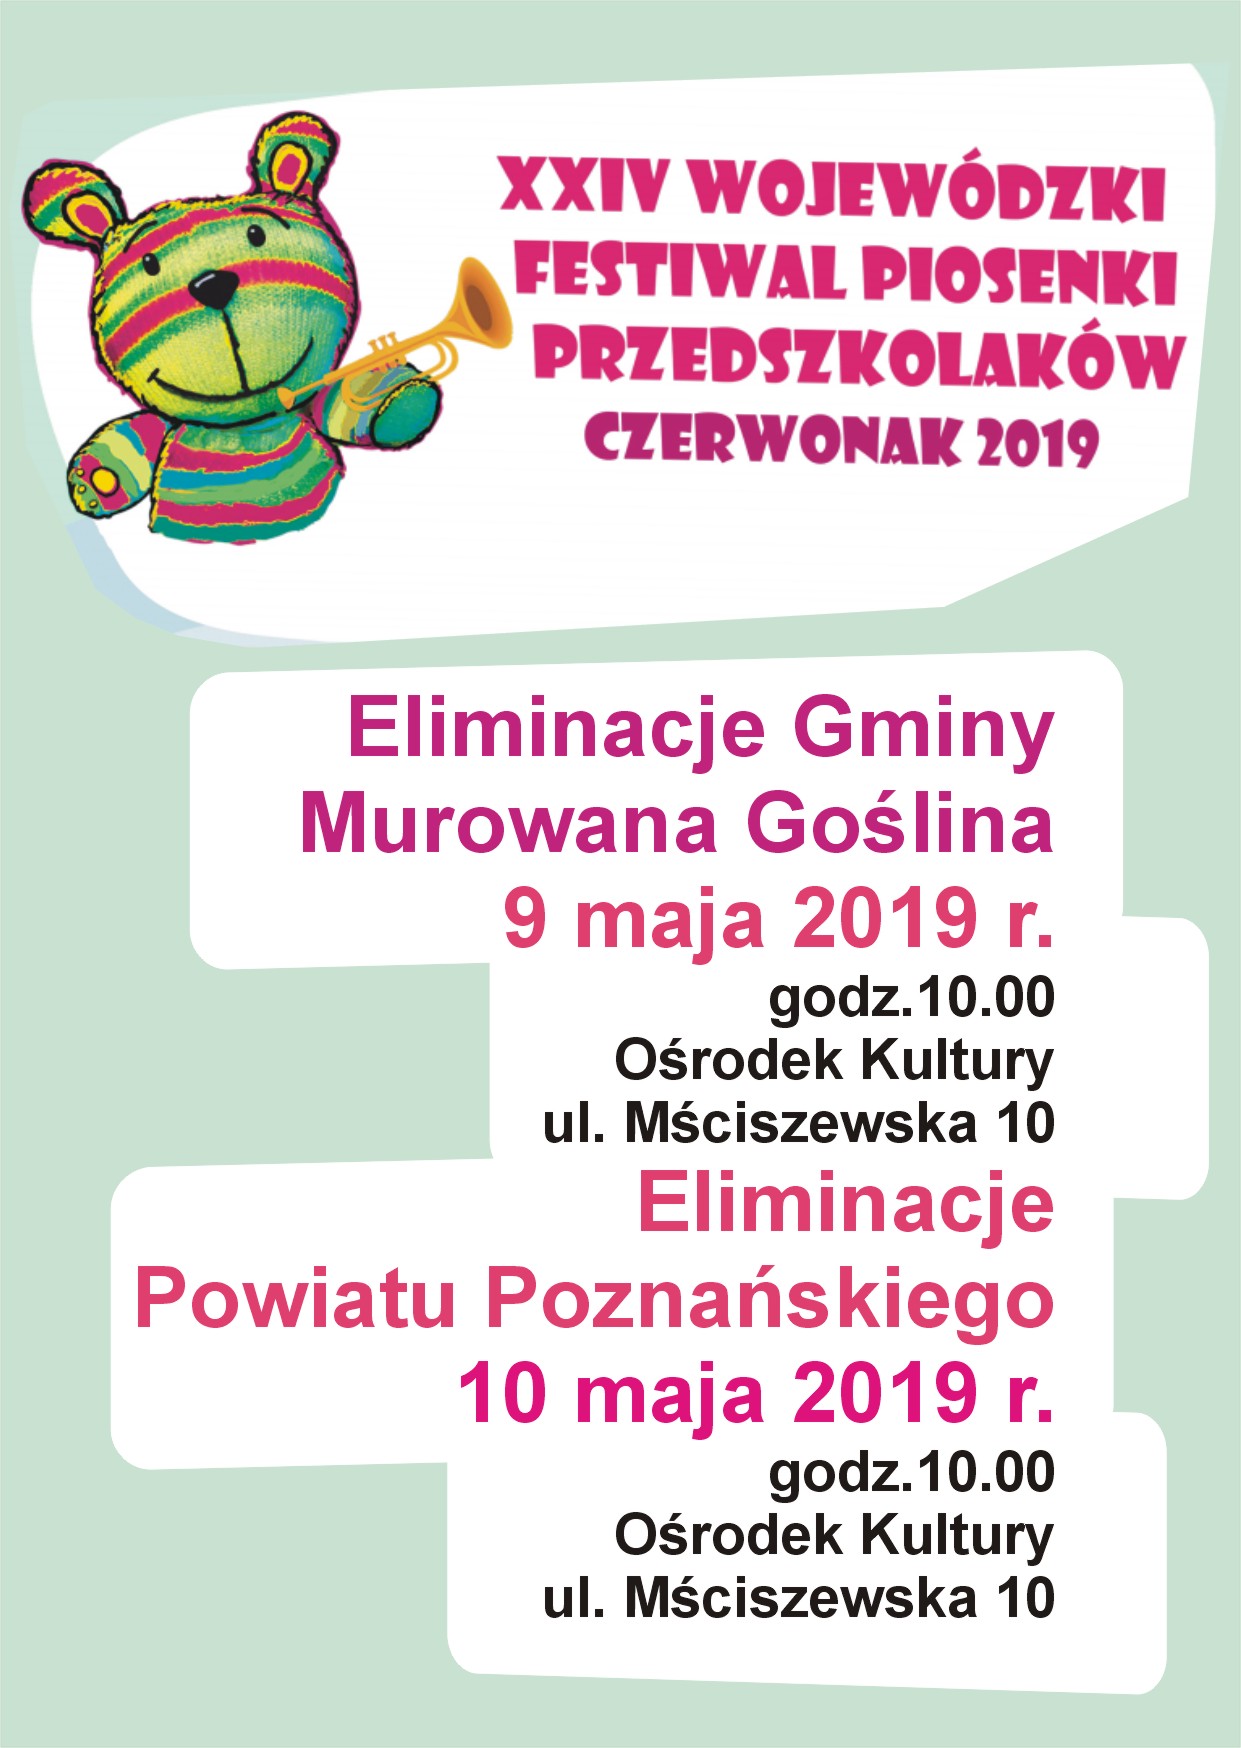 XXIV Wojewódzki Festiwal Piosenki Przeszkolaków